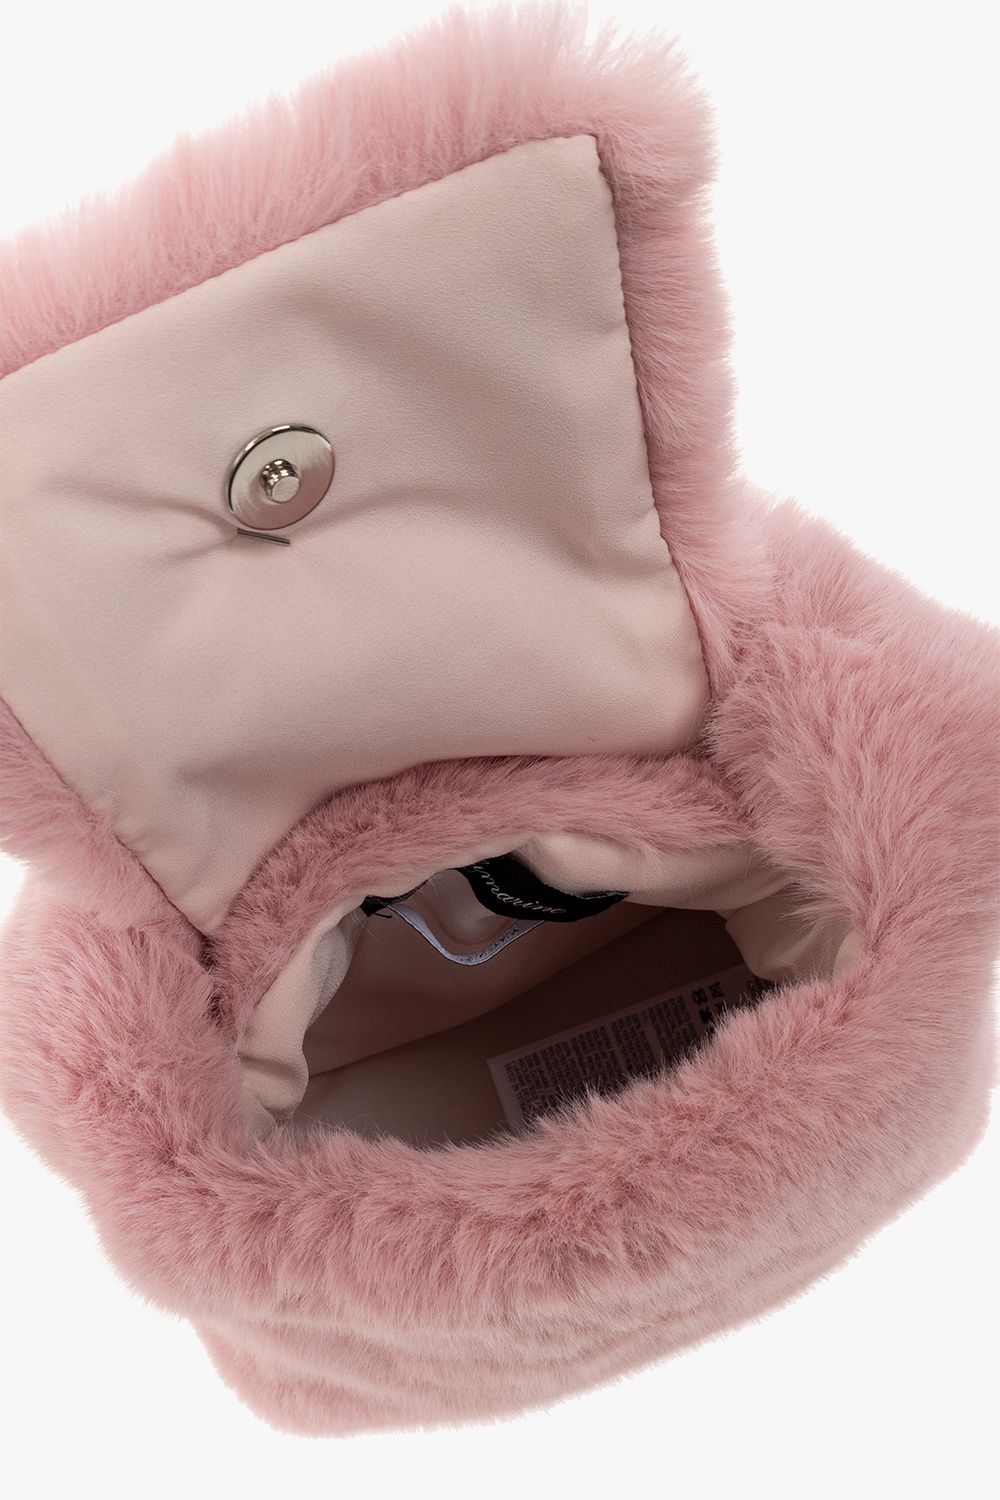 Pre-owned Faux Fur Handbag In Pink